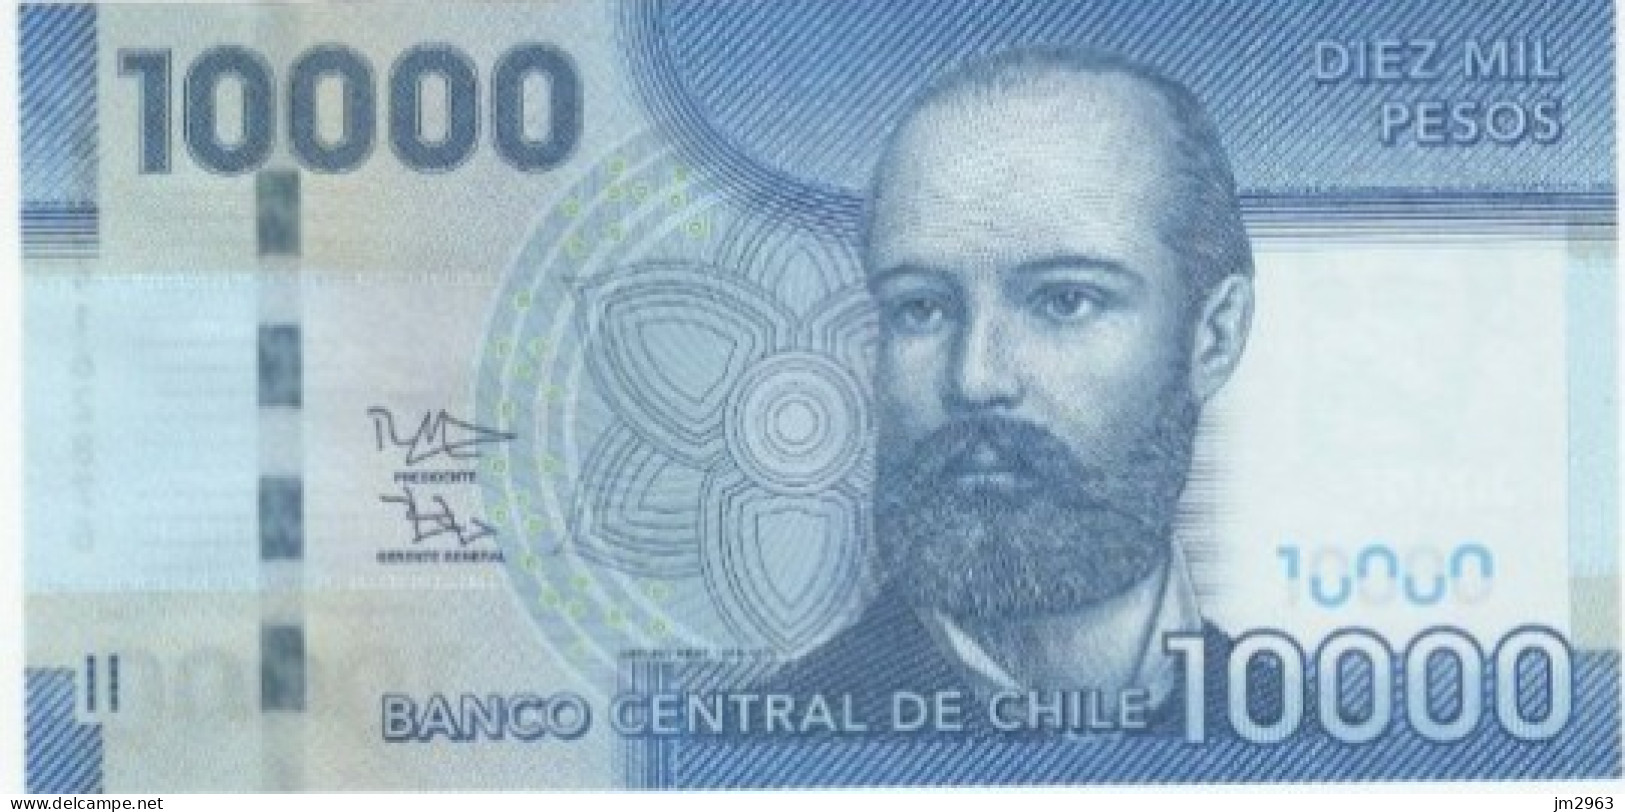 CHILI 10000 PESOS UNC 2012  BG04162876 - Chile